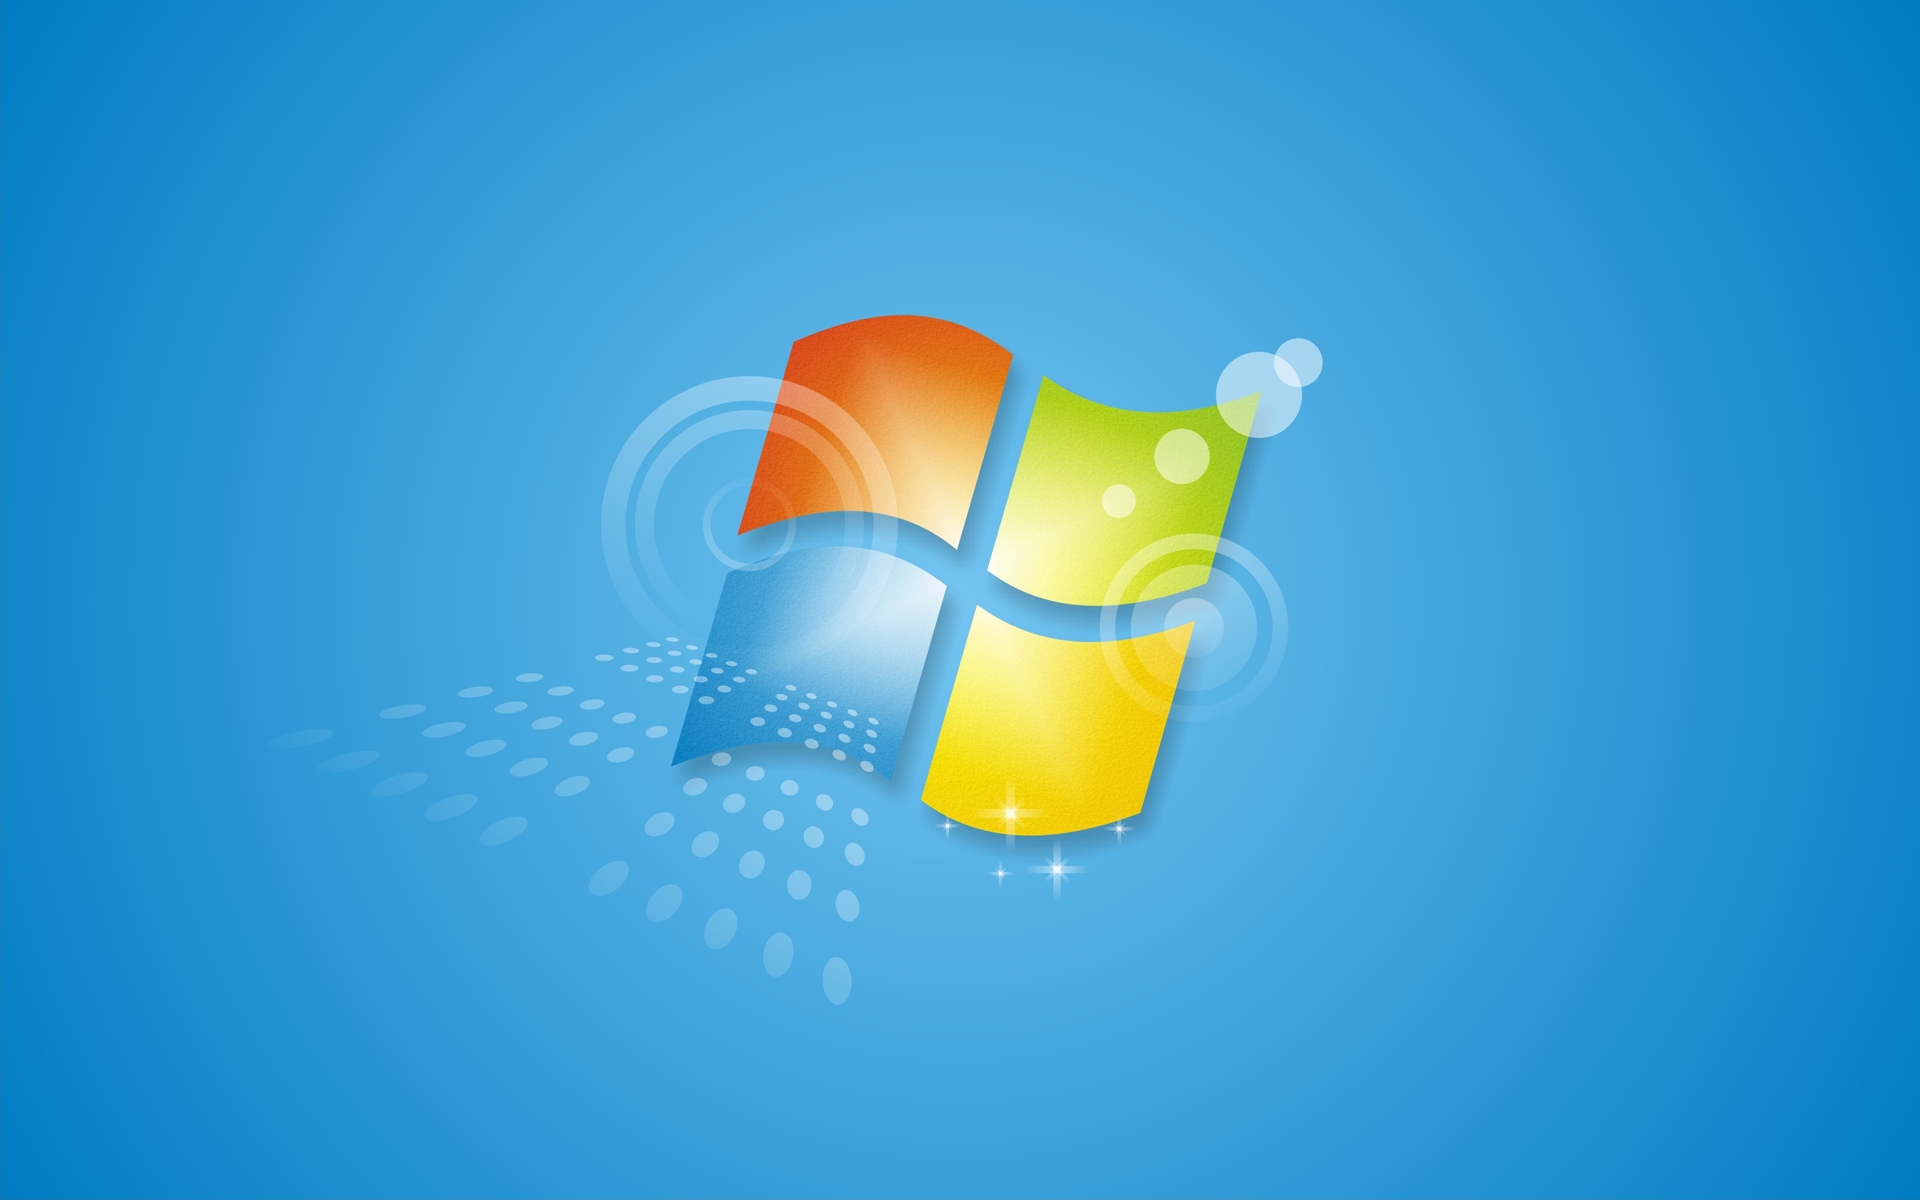 Windows 7 từng là hệ điều hành được yêu thích nhất và đầy ấn tượng, và bây giờ bạn có thể trở lại thời điểm đó với những hình nền Windows 7 độc đáo và thú vị nhất. Hãy đắm mình trong không gian phiêu lưu và hồi hộp với những hình nền Windows 7 đầy màu sắc và ấn tượng. Hãy tận dụng cơ hội này để cảm nhận Windows 7, và trải nghiệm những điều thú vị mà hệ điều hành này mang lại. 